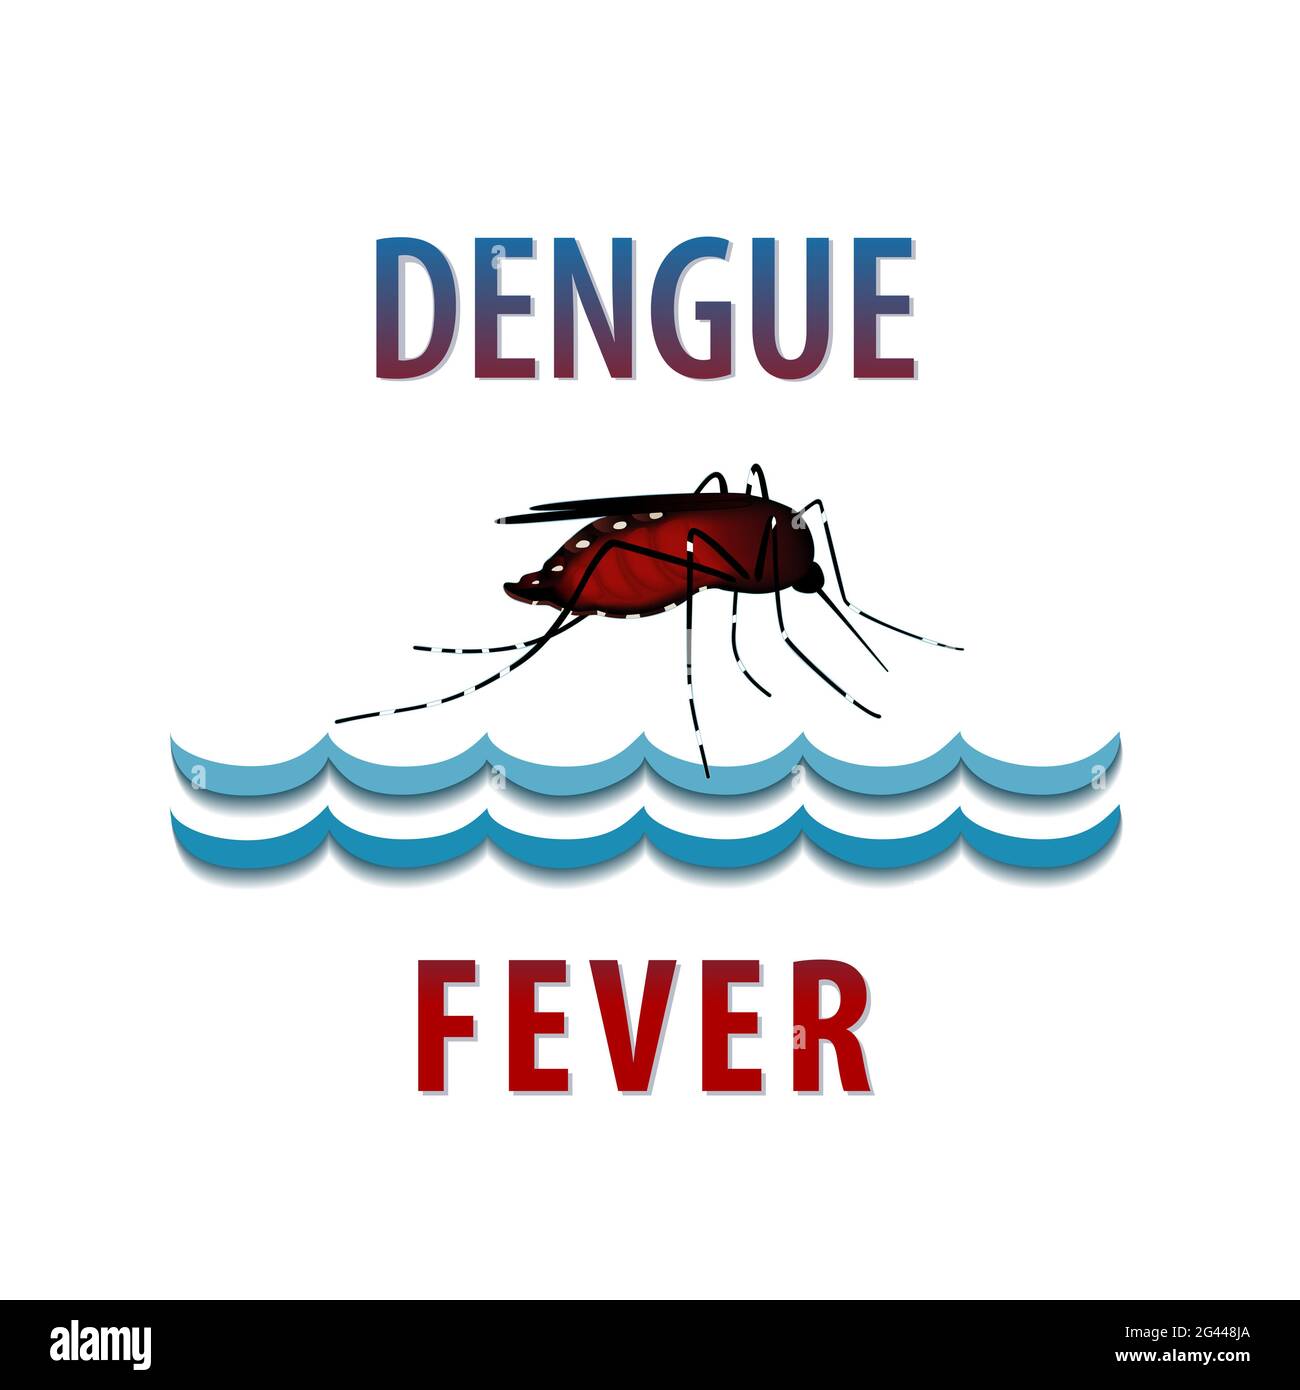 Febbre dengue, zanzara, insetto morbillo riempito di sangue, acqua in piedi, rischio per la salute pubblica, vettore di malattie infettive isolato su sfondo bianco Foto Stock